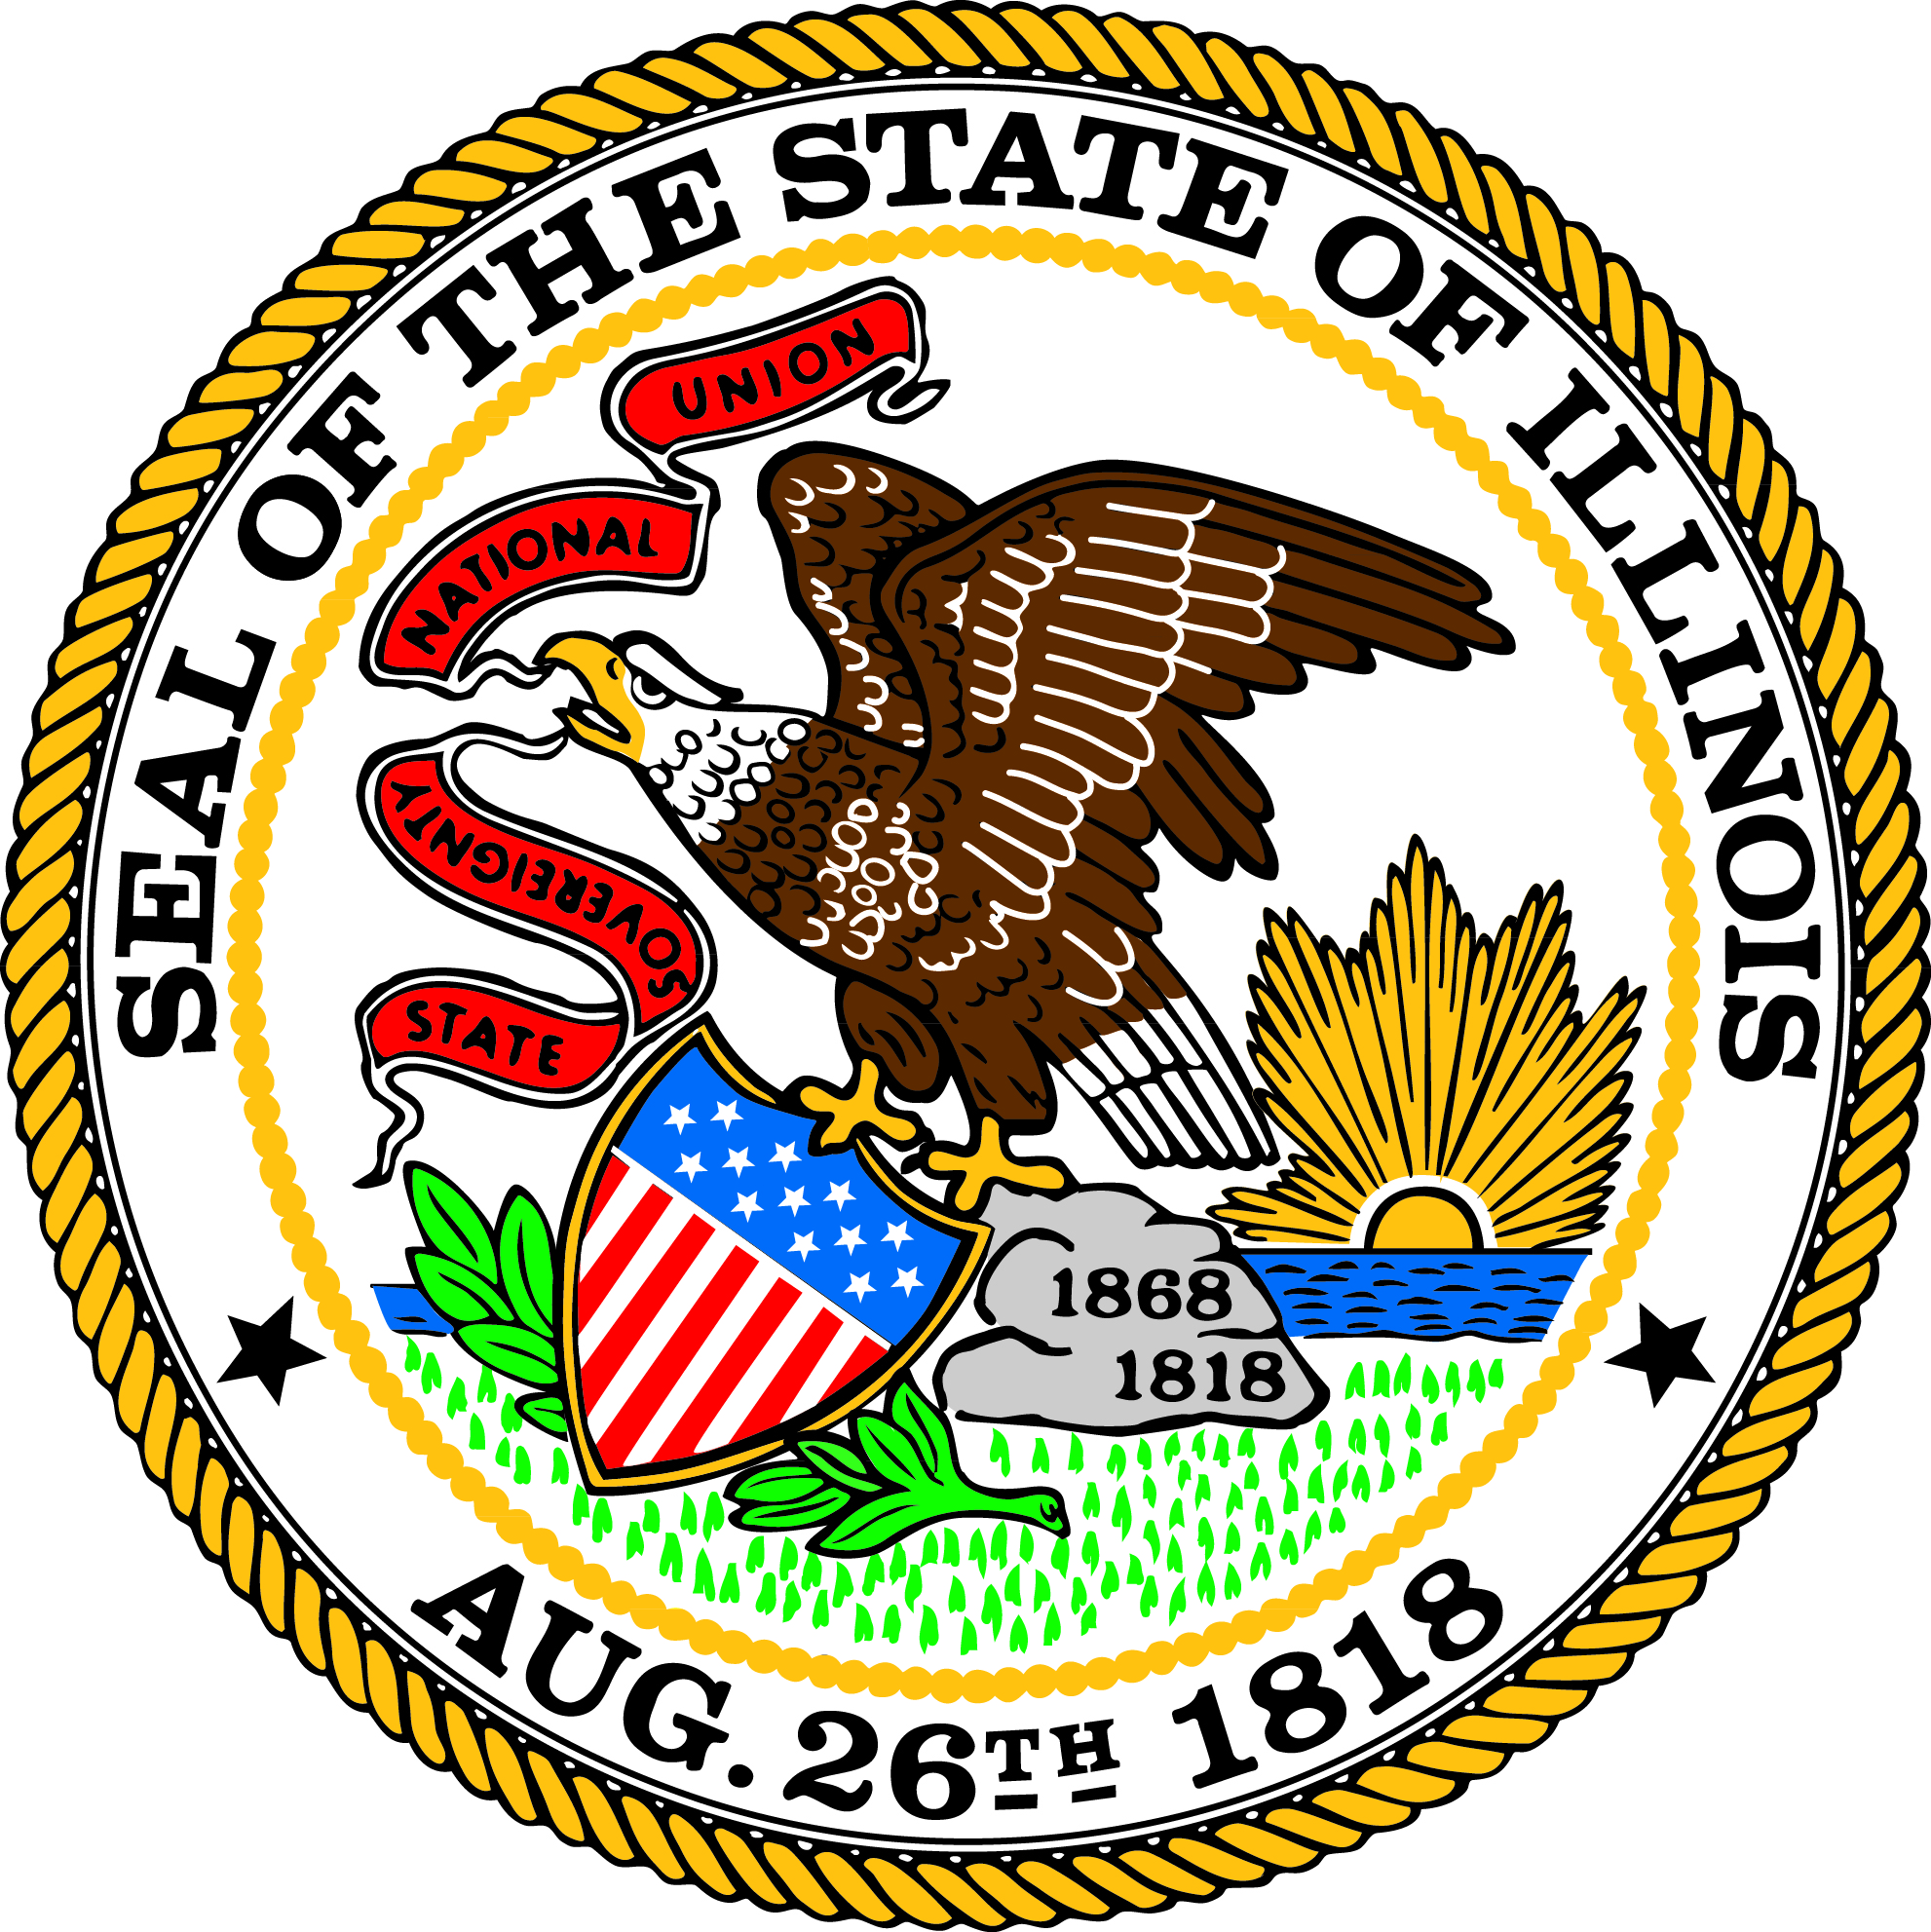 State of Illinois logo